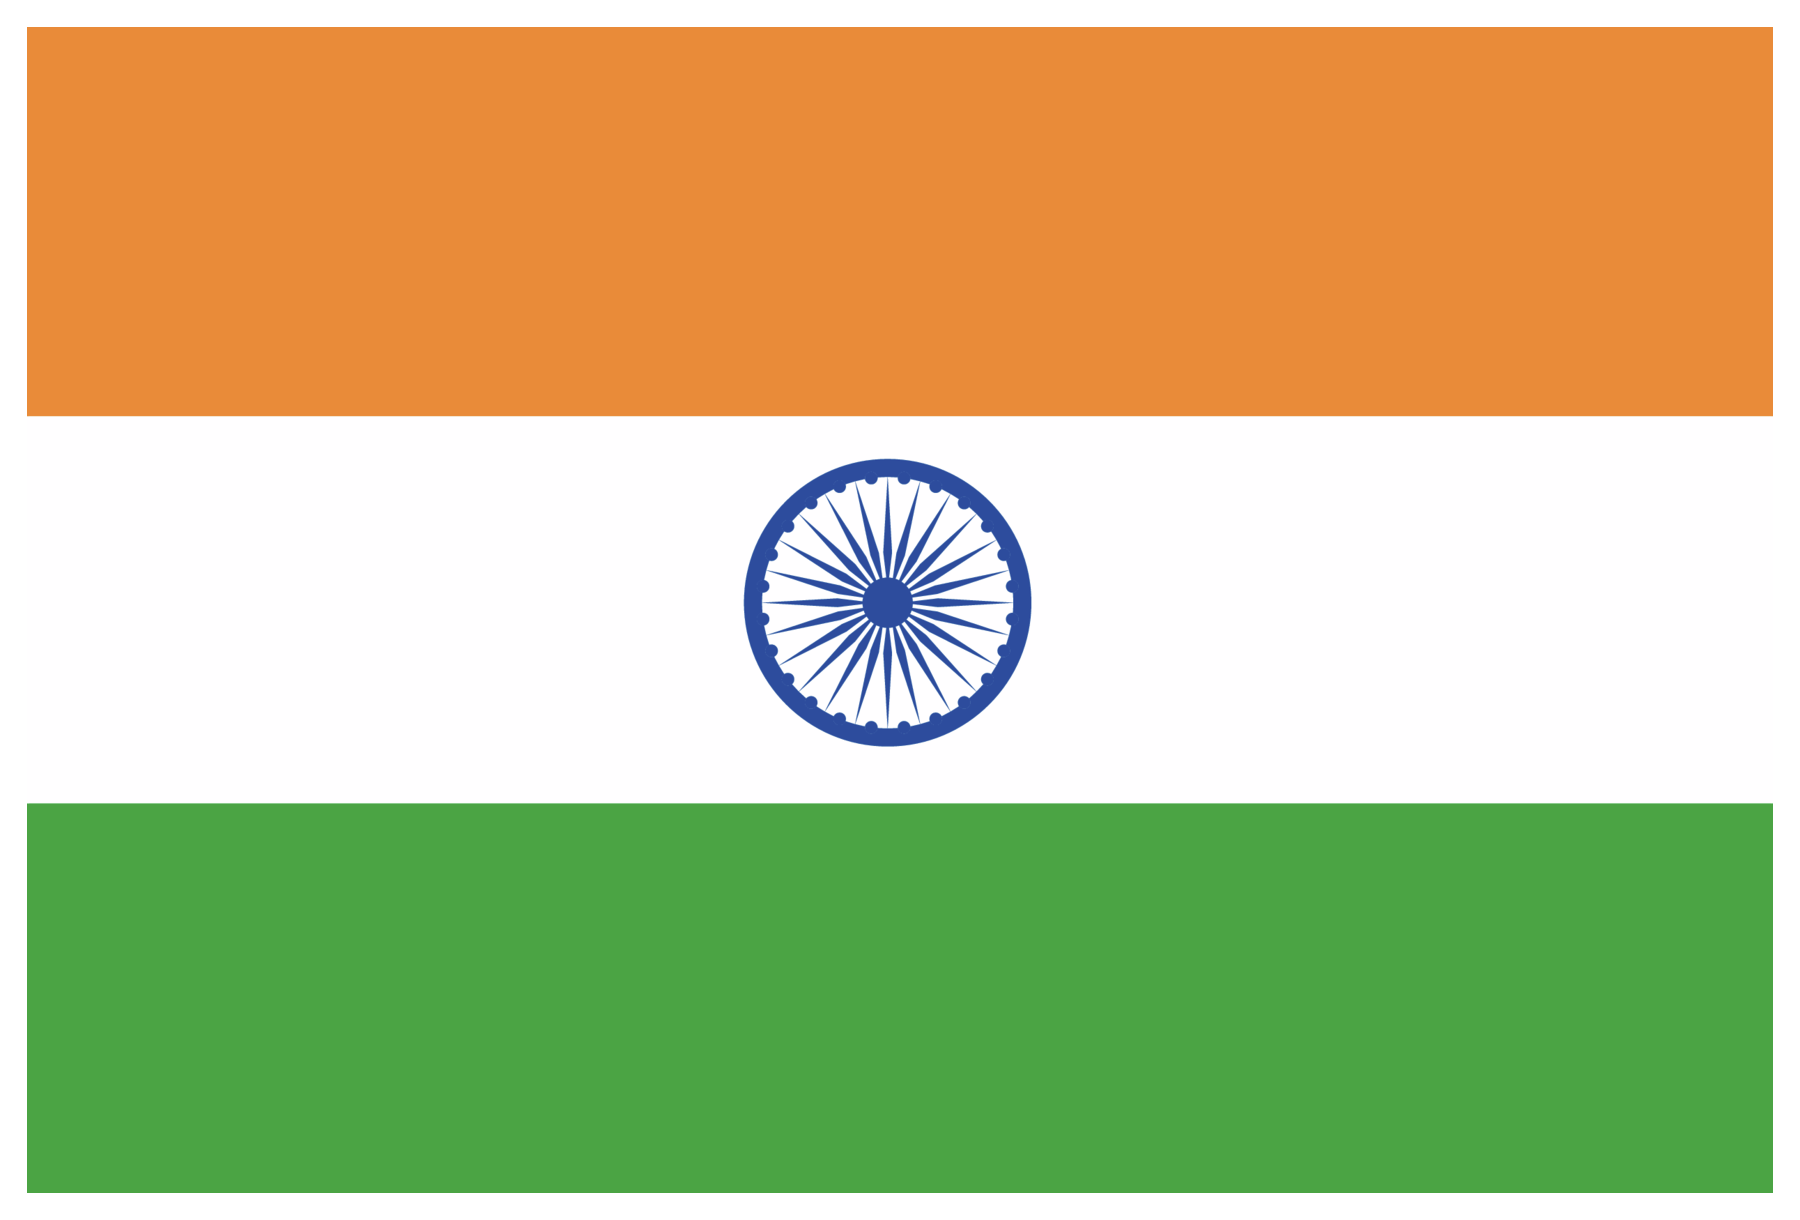 Bandeira da Índia, composta por três faixas horizontais em laranja, branco e verde com um círculo azul ao centro da faixa branca.